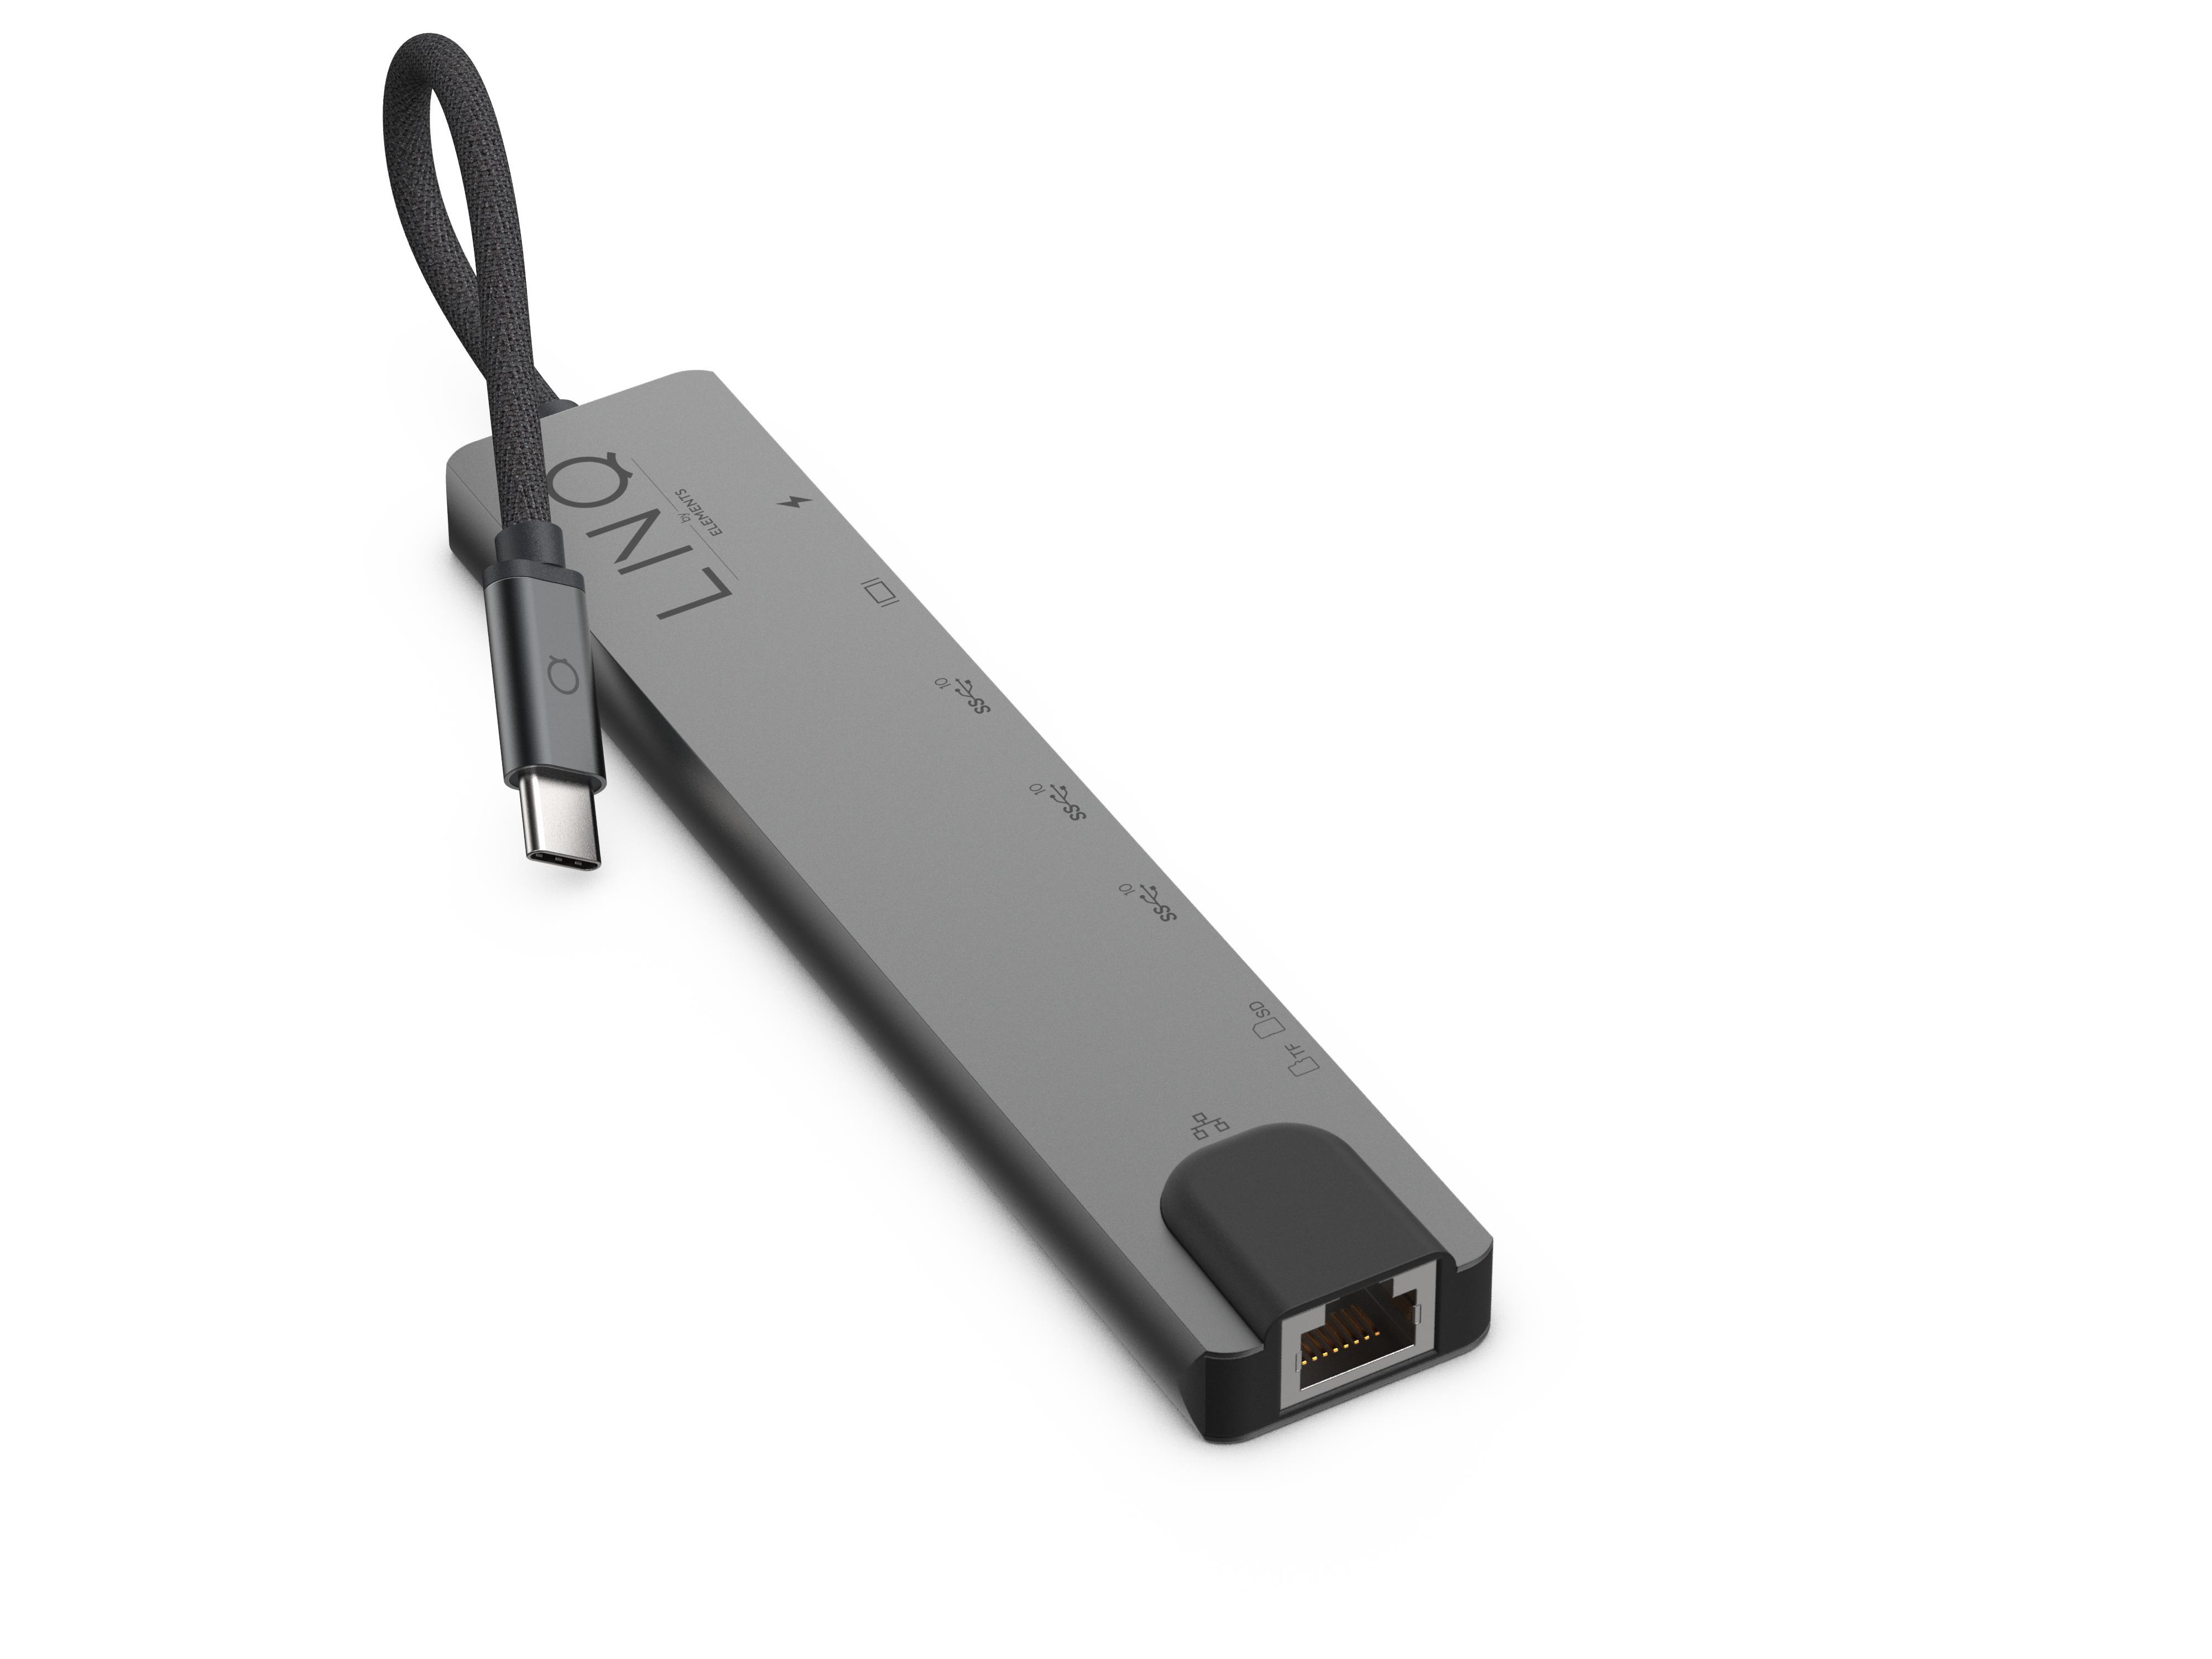 LINQ 8in1 Black, Hub, USB-C Grey Pro